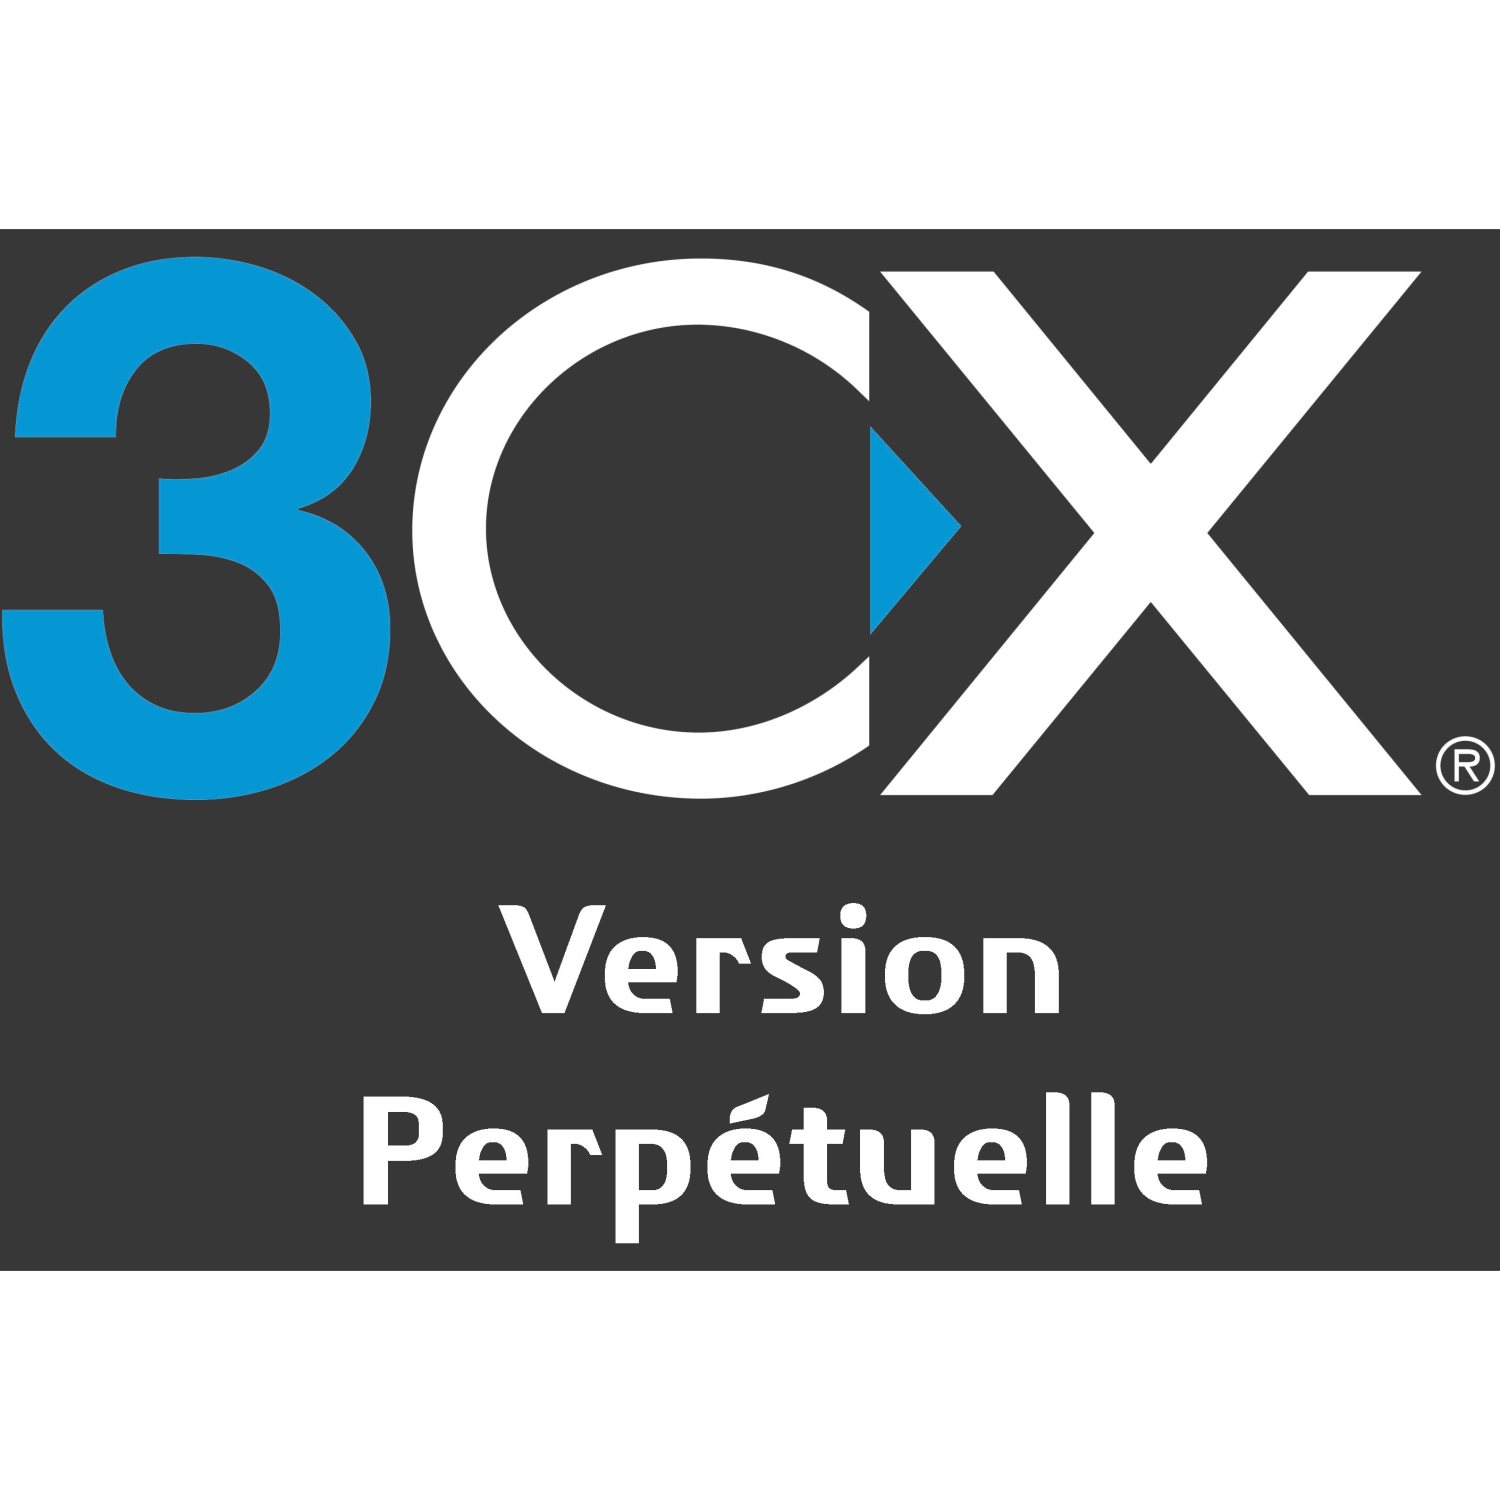  Logiciel IPBX 3CX Logiciel IPBX 3CX version perpétuelle 